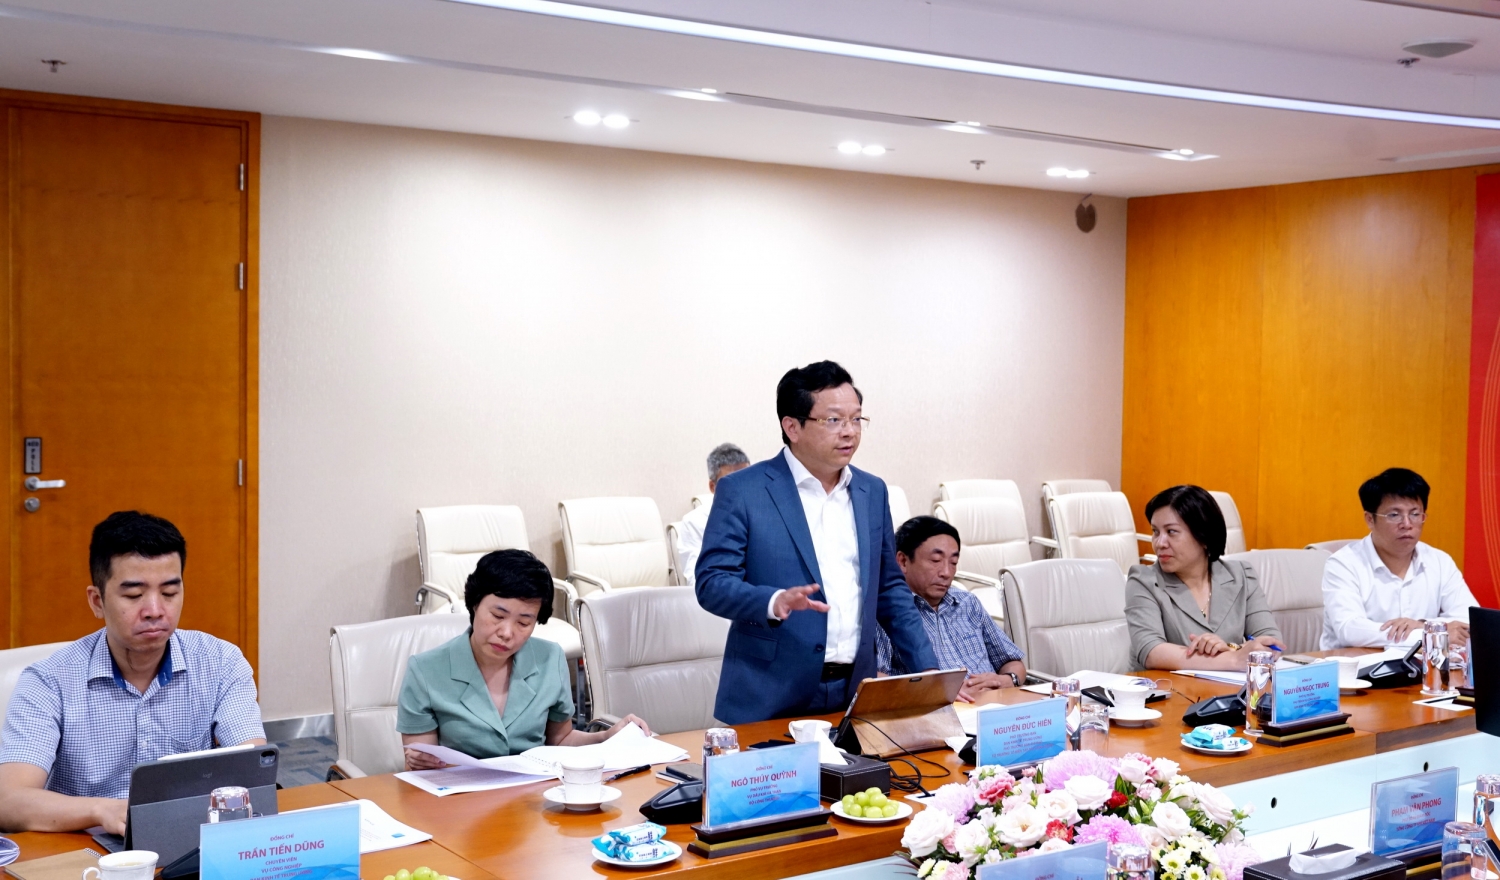 Đồng chí Nguyễn Đức Hiển - Phó Trưởng Ban Kinh tế Trung ương phát biểu chỉ đạo tại buổi làm việc